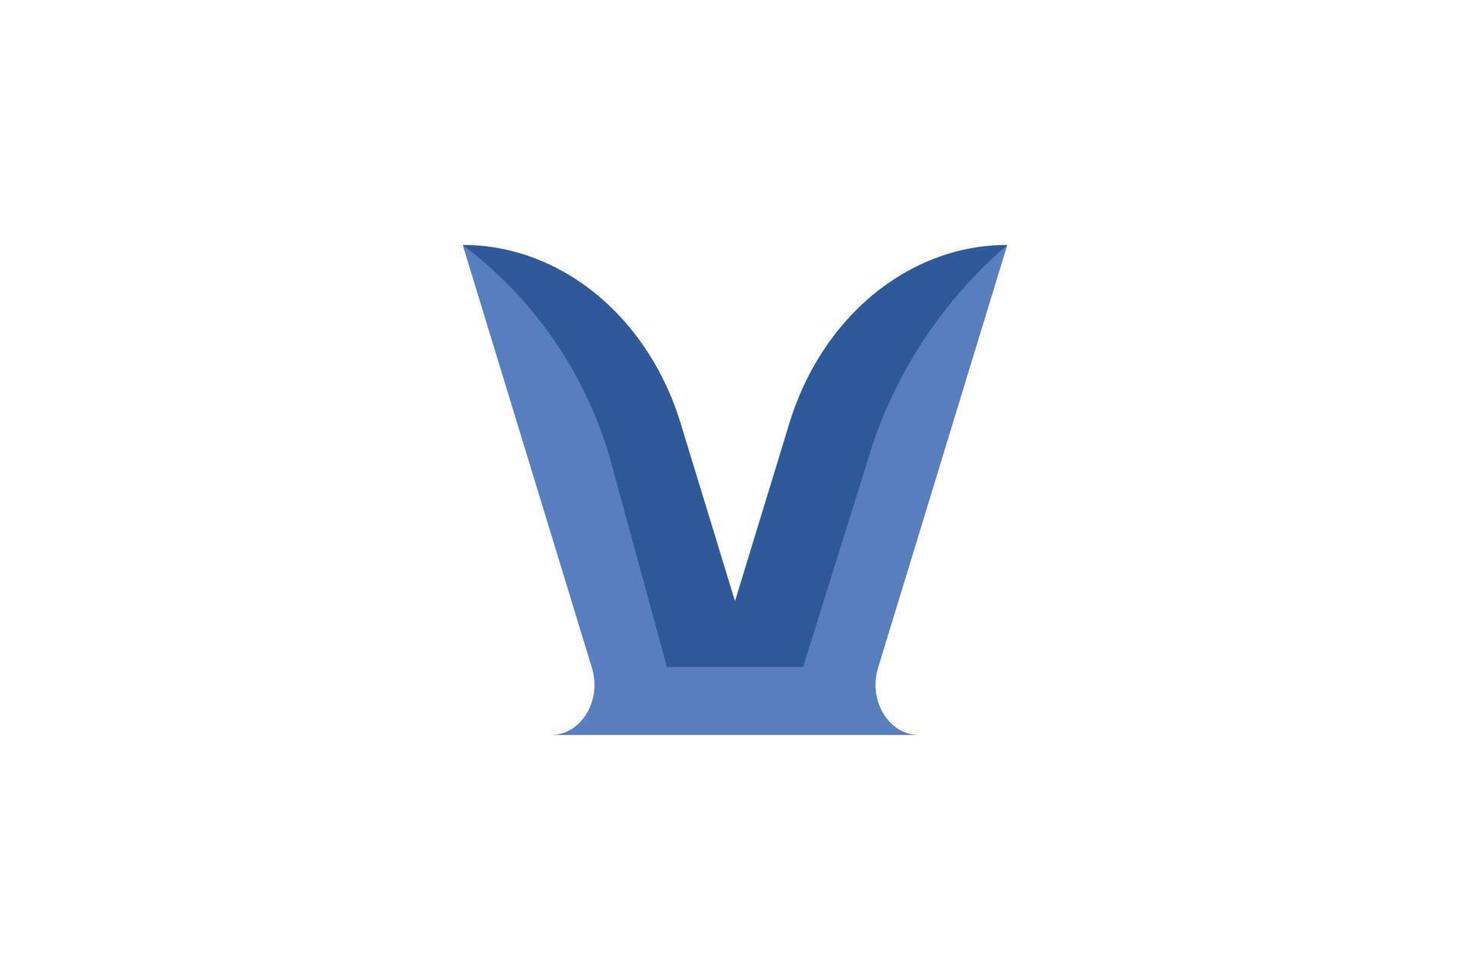 kreativbuchstabe v logo vektor